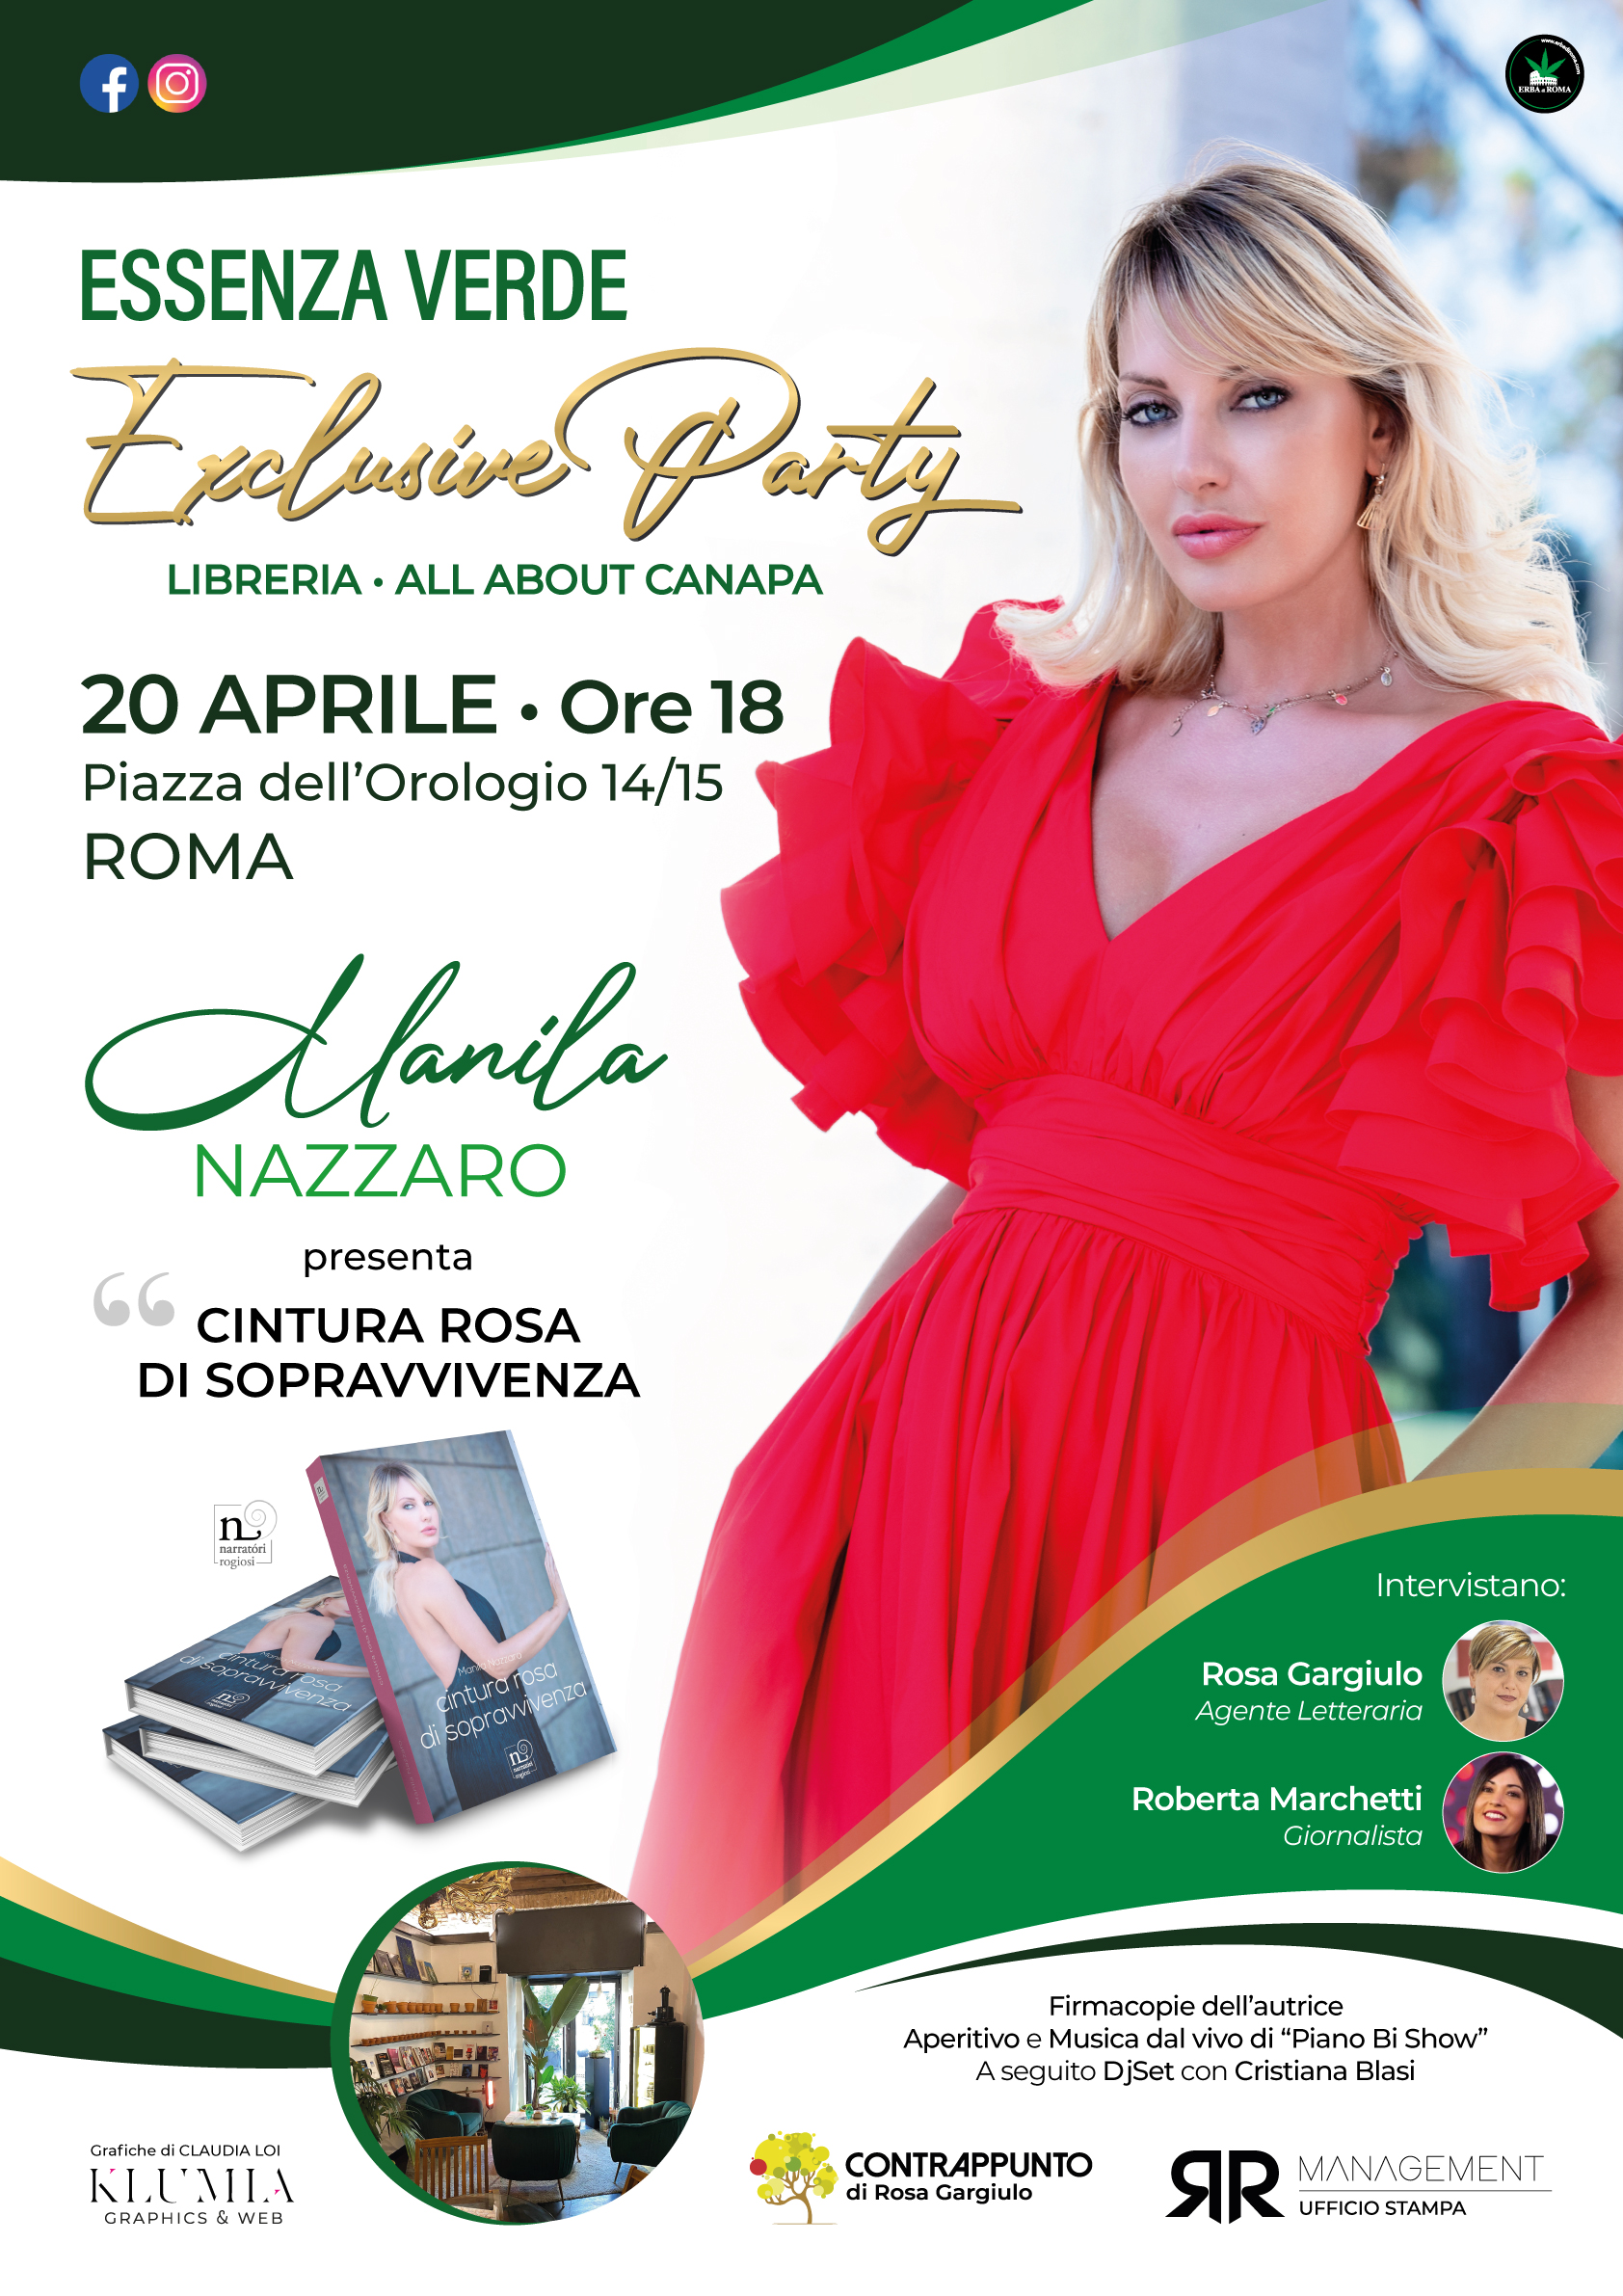 Manila Nazzaro presenta: “Cintura Rosa di sopravvivenza” Mercoledì 20 Aprile  alle 18.00 sa “Essenza Verde” a Roma 